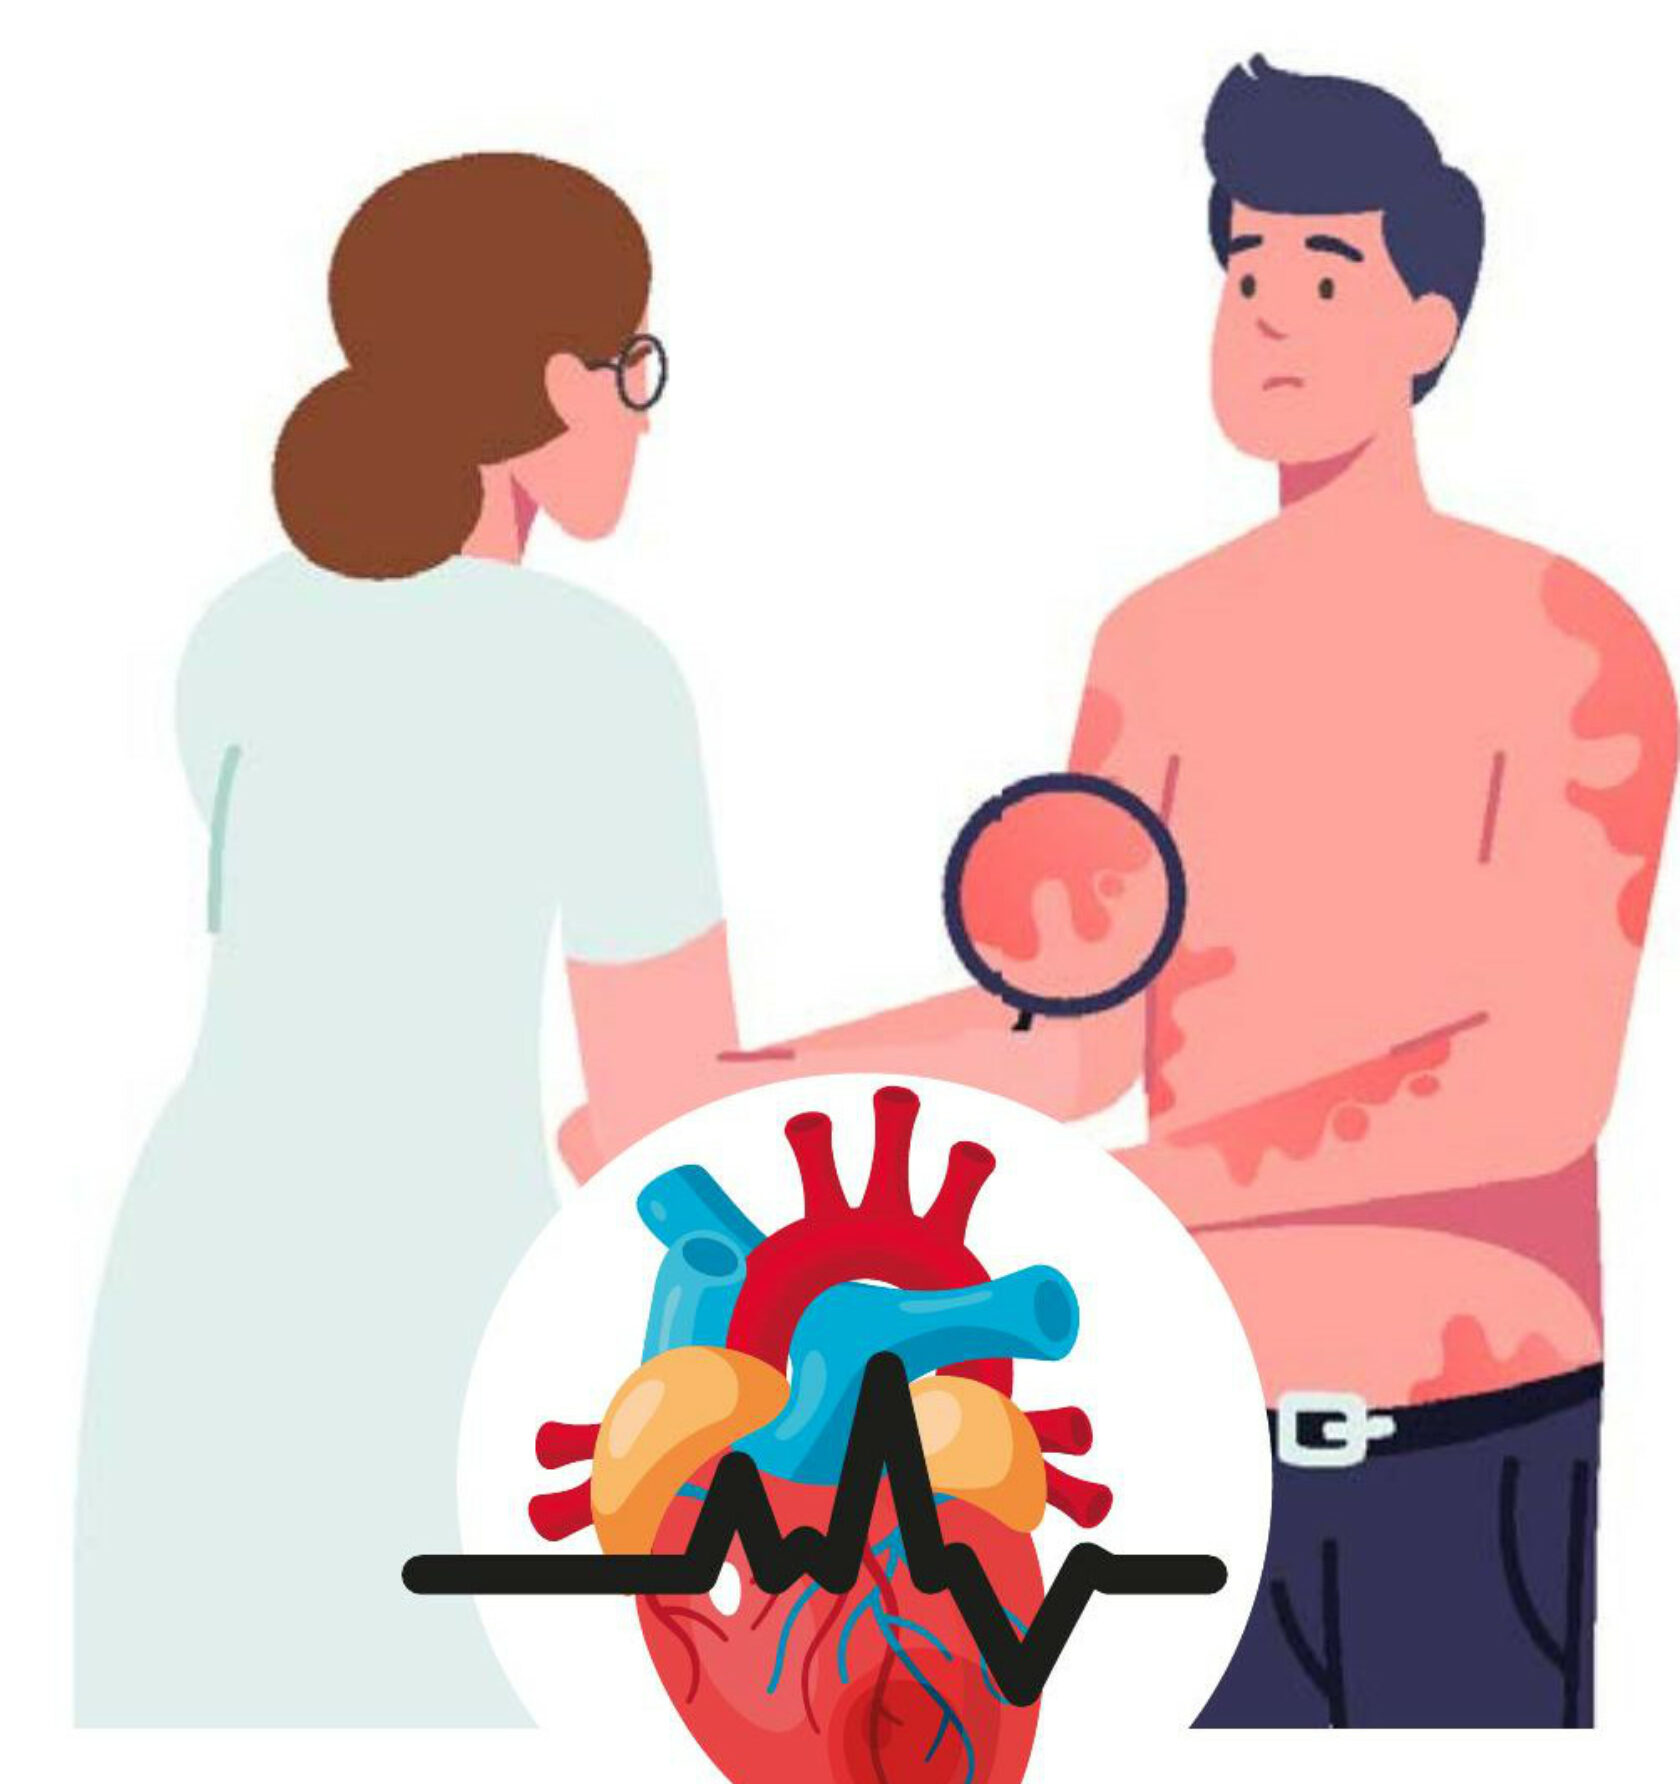 Flat-Darstellung eines Patienten mit Herzproblemen mit Ärztin